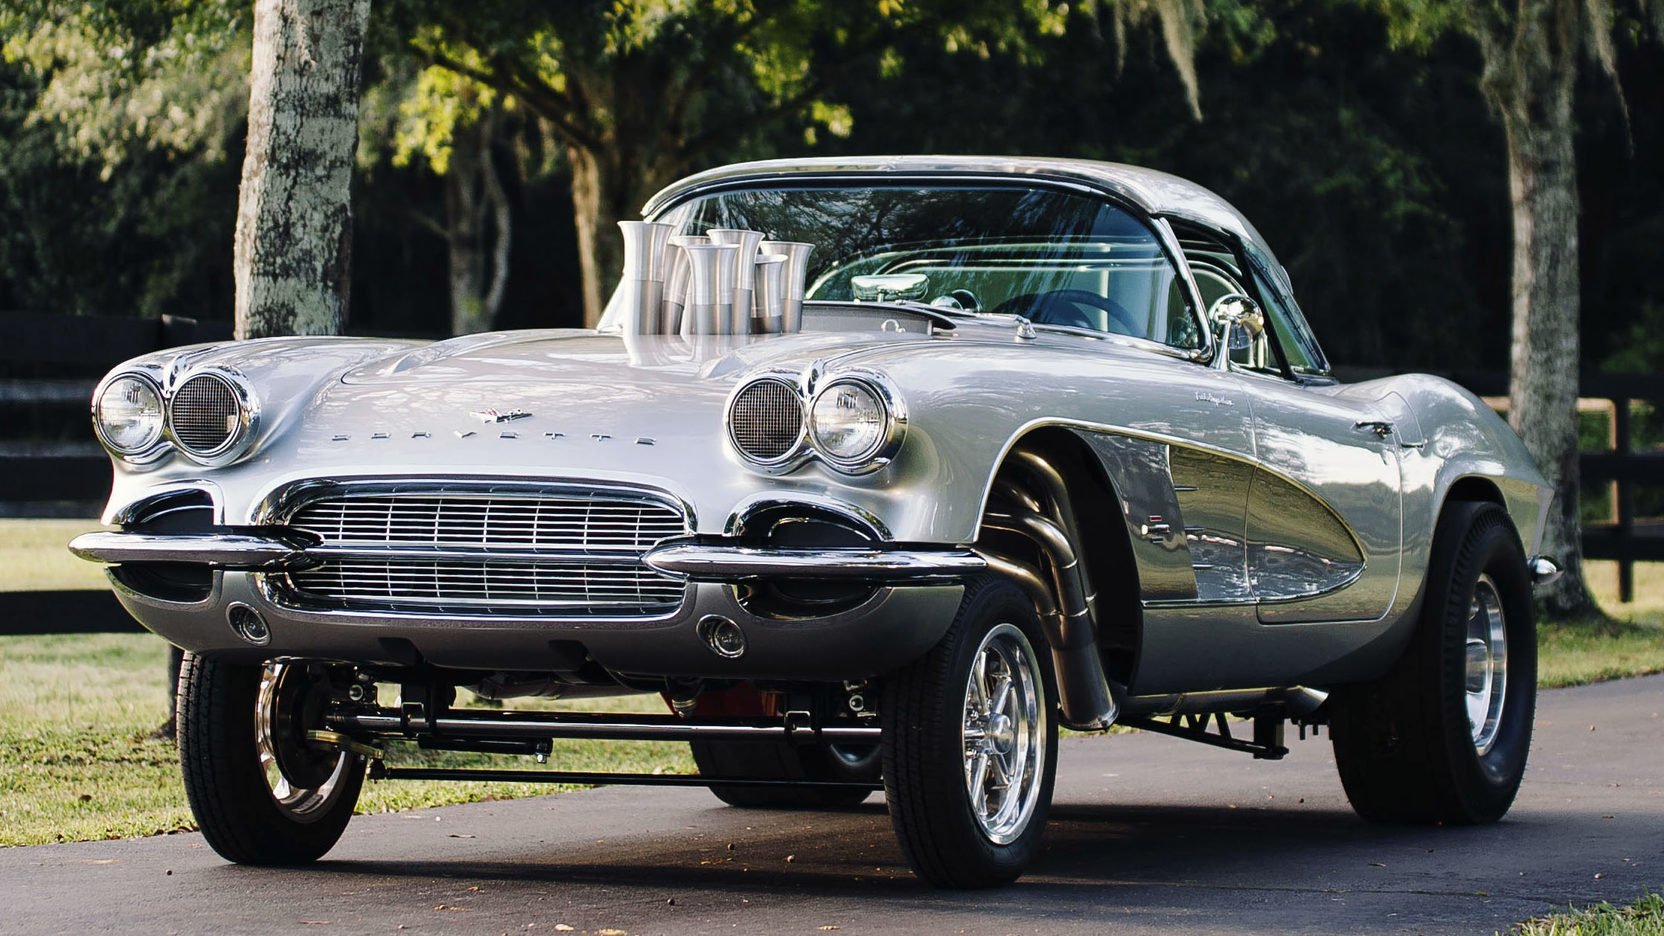 Corvette Of The Day: 1961 Chevrolet Corvette Gasser Resto Mod